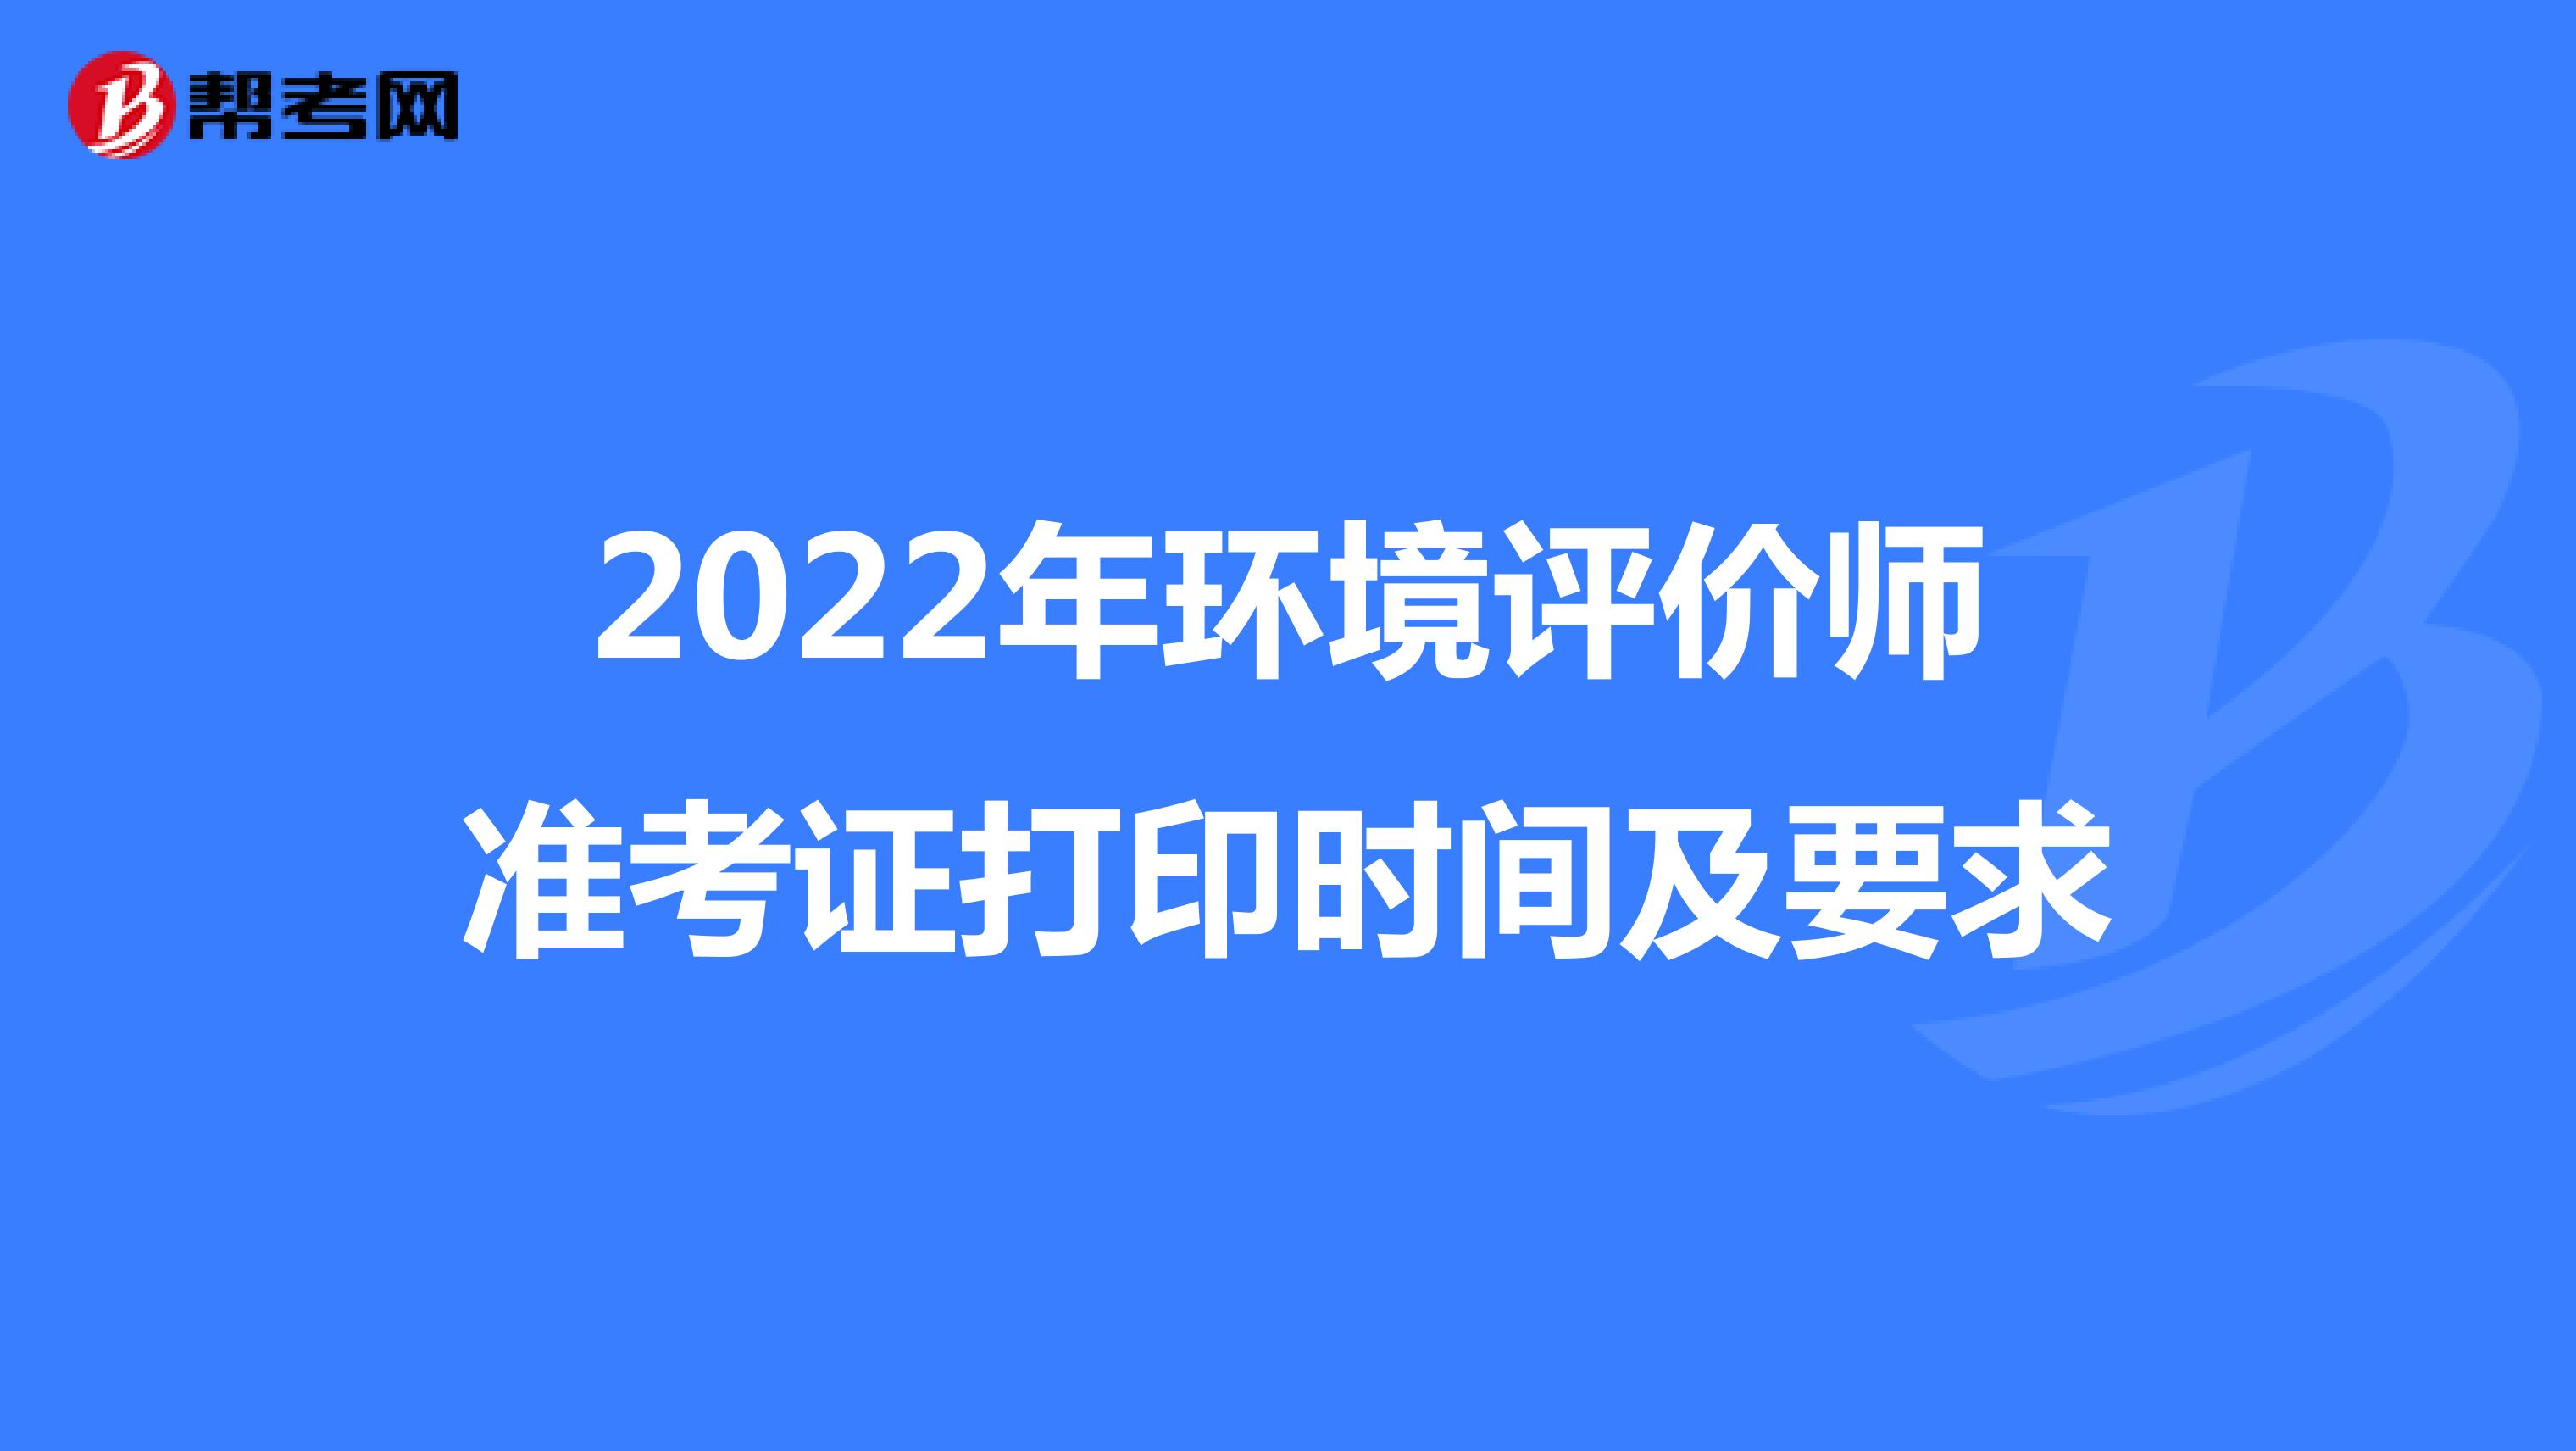 2022年环境评价师准考证打印时间及要求